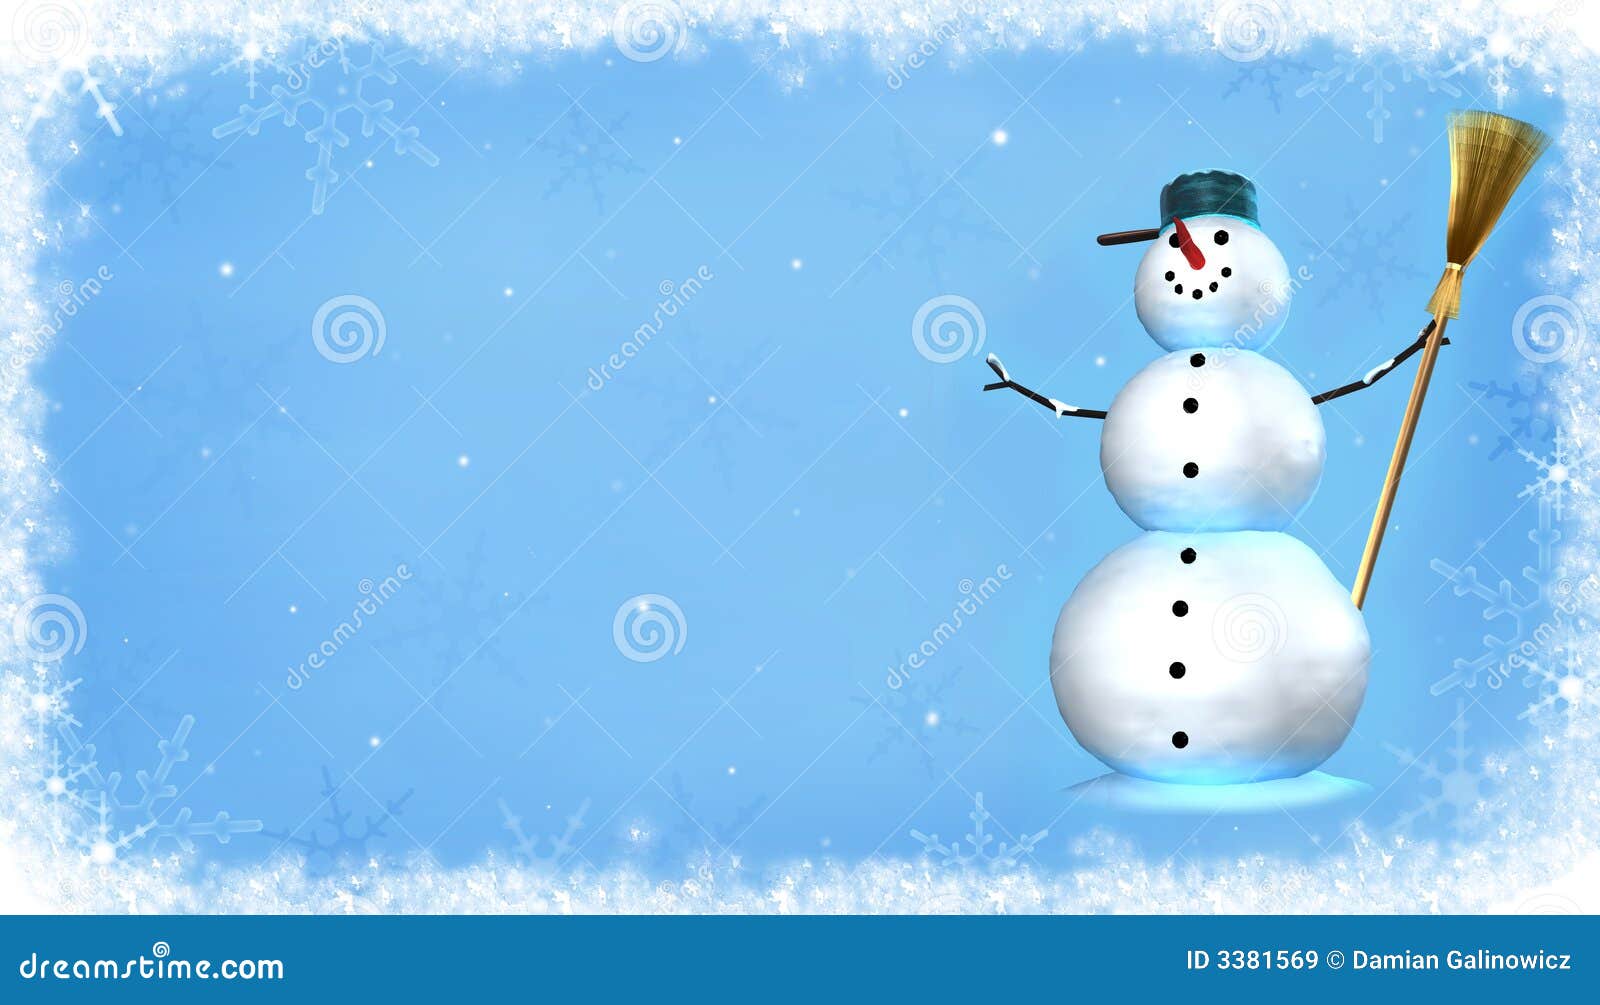 Boneco de neve ilustração stock. Ilustração de snowman - 3381569